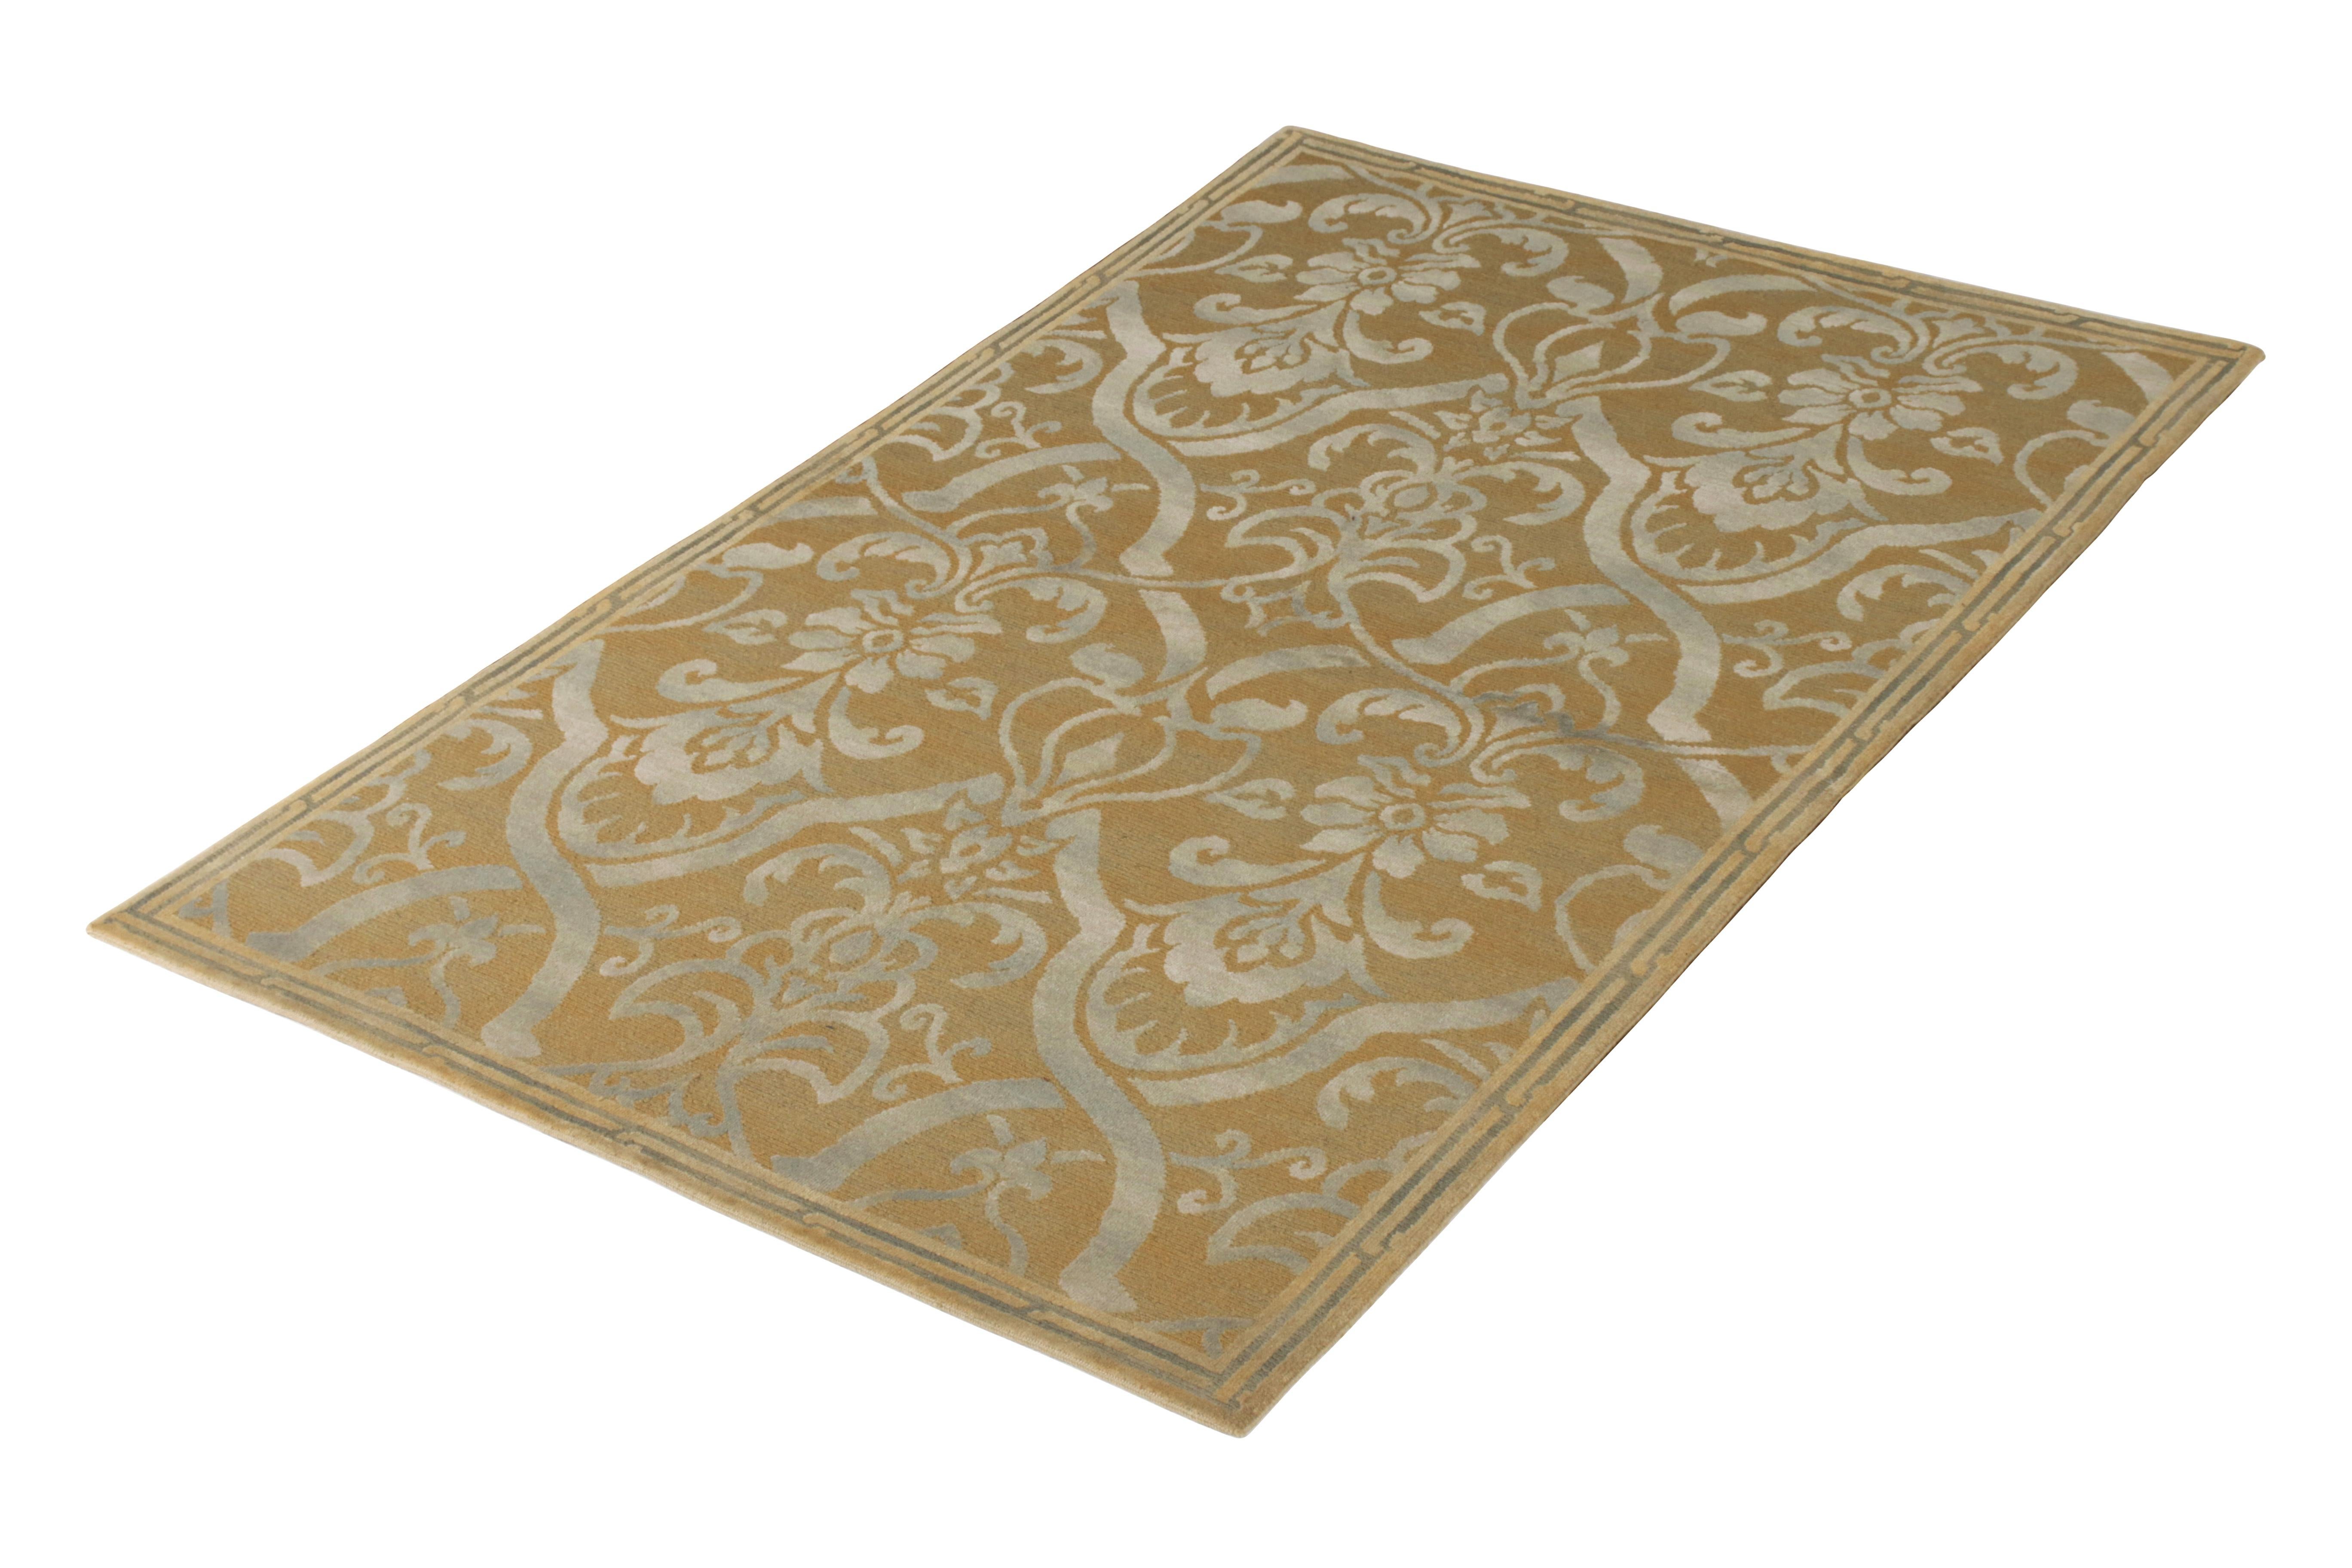 6x9 Ode an den italienischen Teppichstil des 19. Jahrhunderts in Beige-Braun und Grau, die in die Teppichkollektion Rug & Kilims European aufgenommen wurde. Handgeknüpft aus Wolle, mit Nähten aus europäischem Spalier und floralen Mustern in